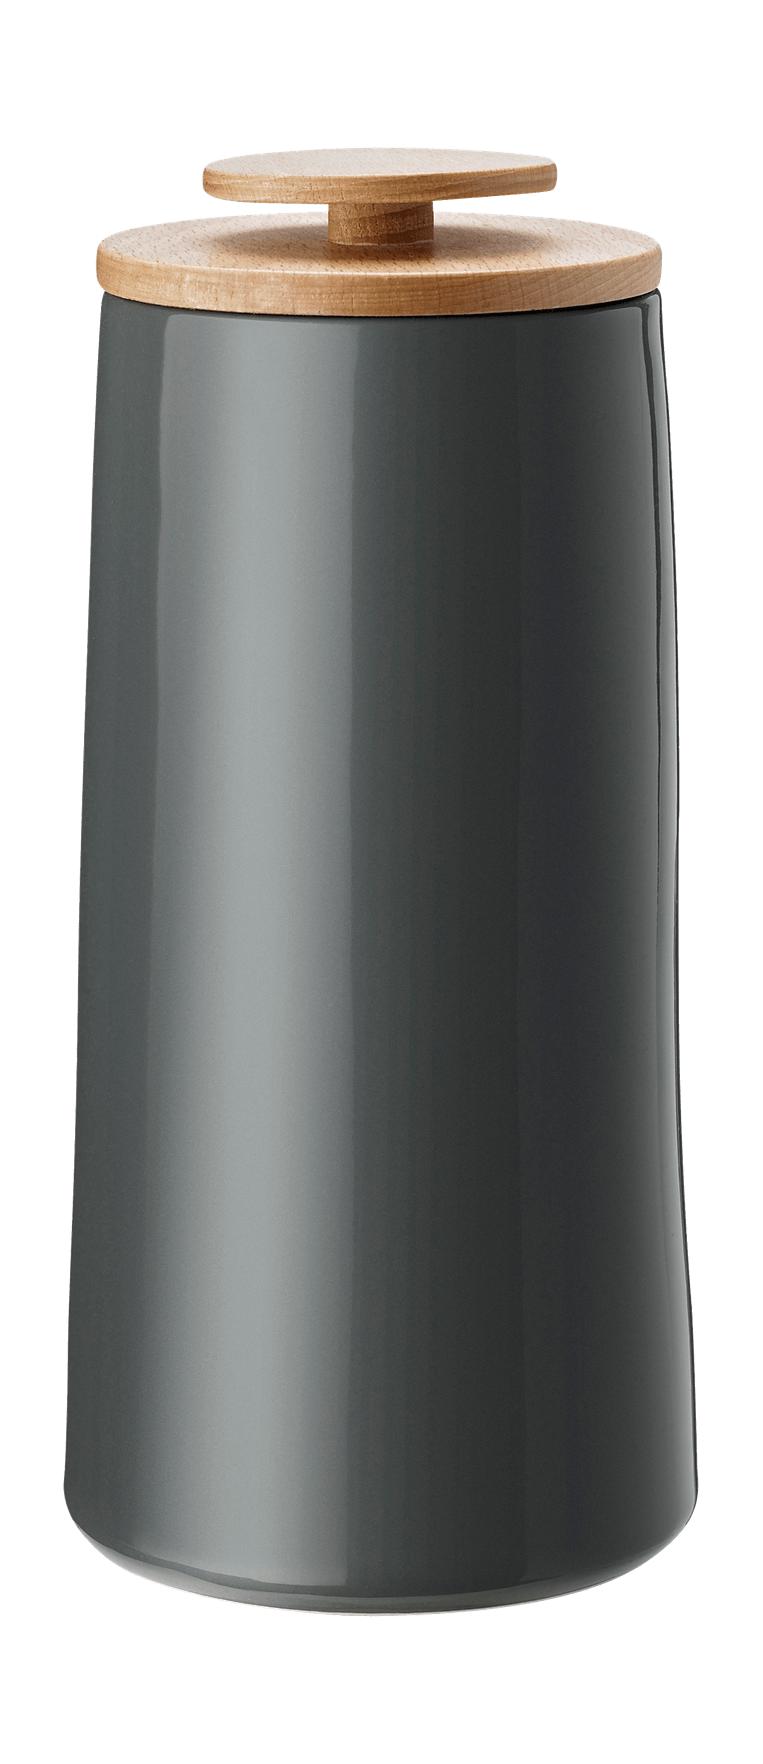 Stelton Emma Coffee Can/Storage Box 1.2 L, Dark Grey